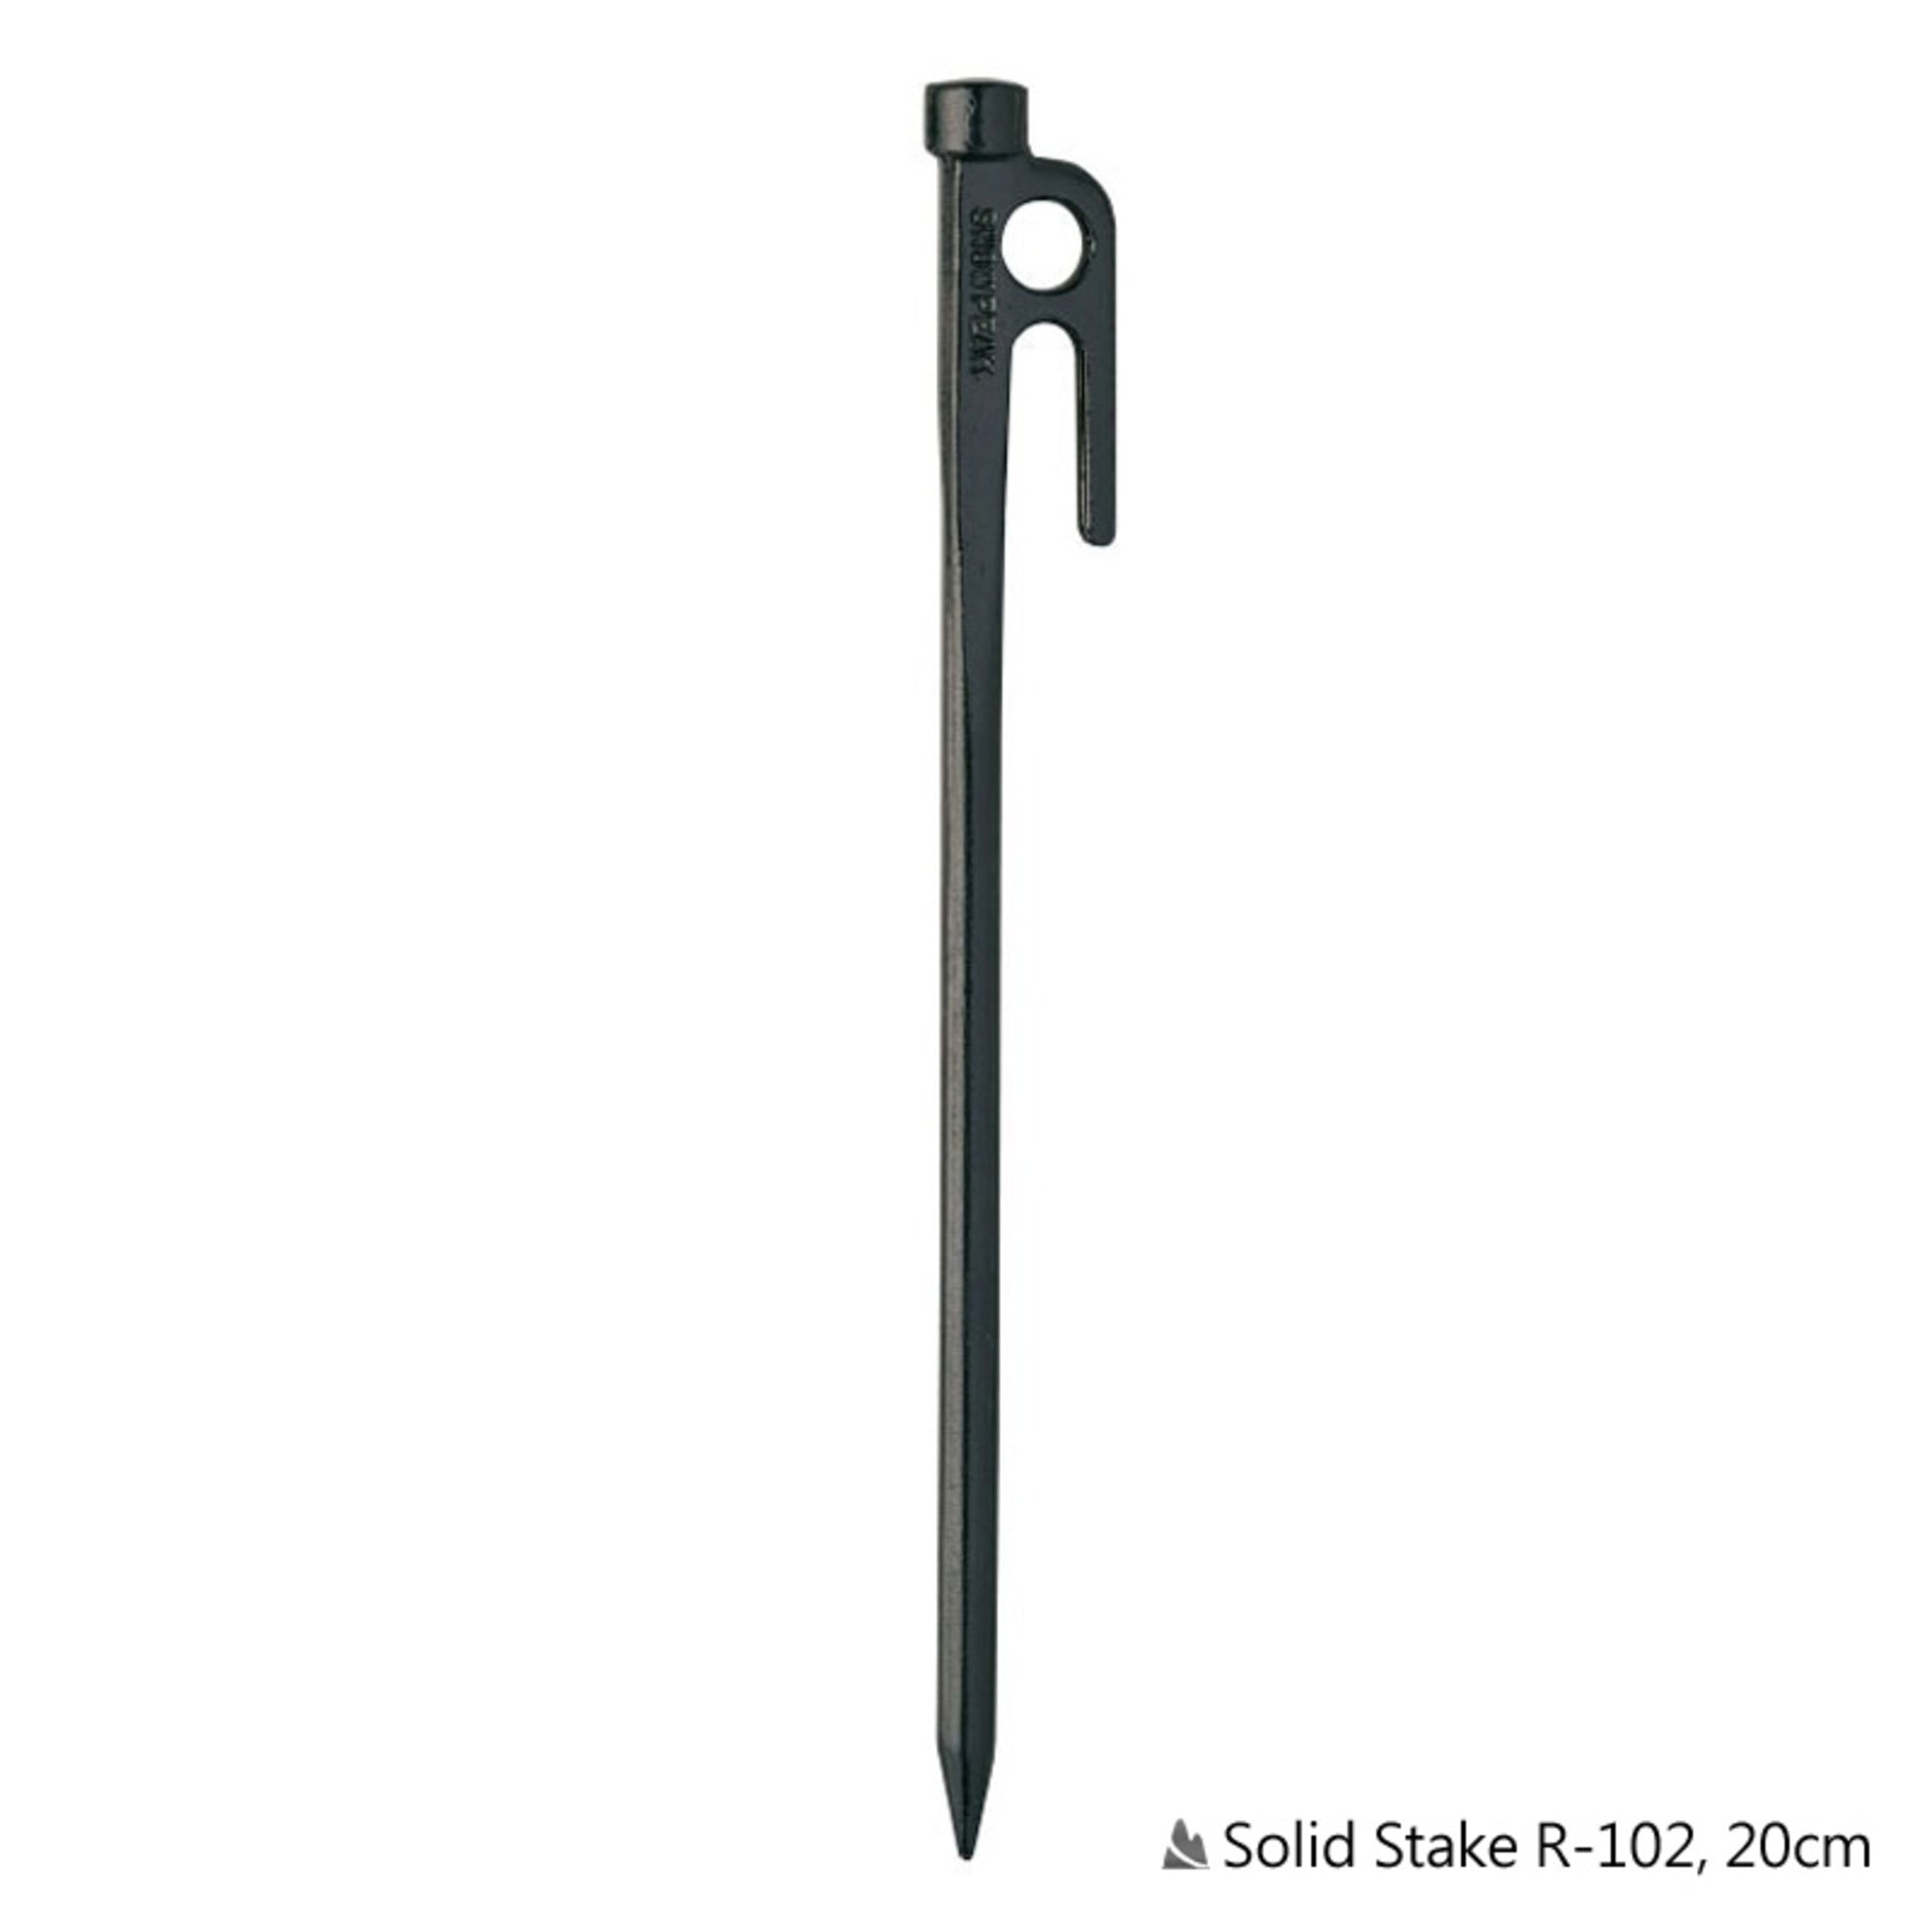 SnowPeak Solid Stake 20cm鍛造強化營釘S55C鋼材 R-102